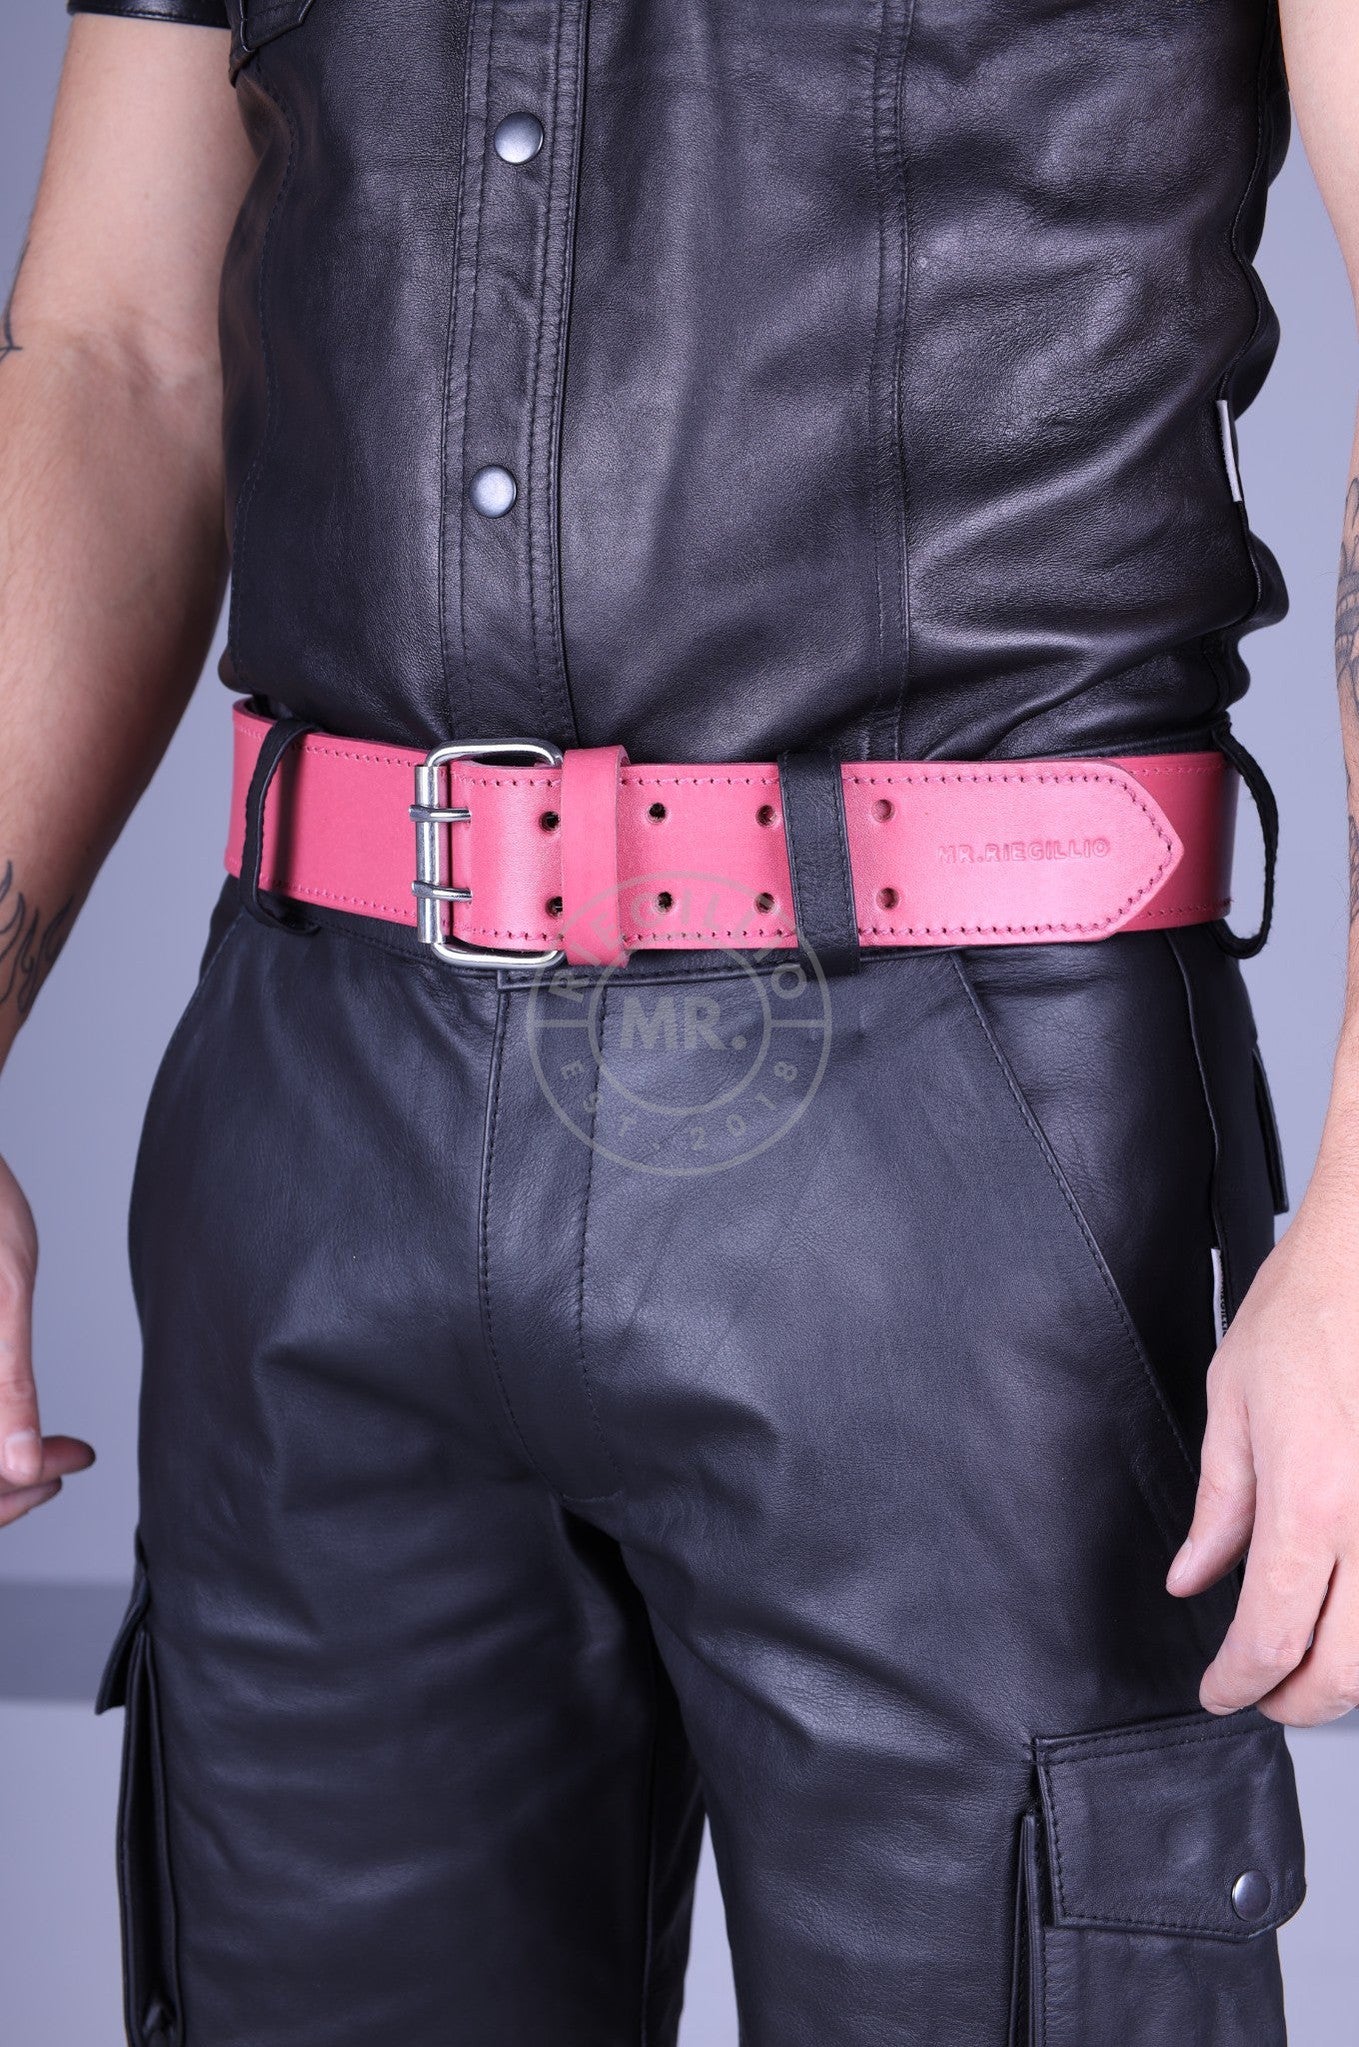 Pink Leather Belt-at MR. Riegillio